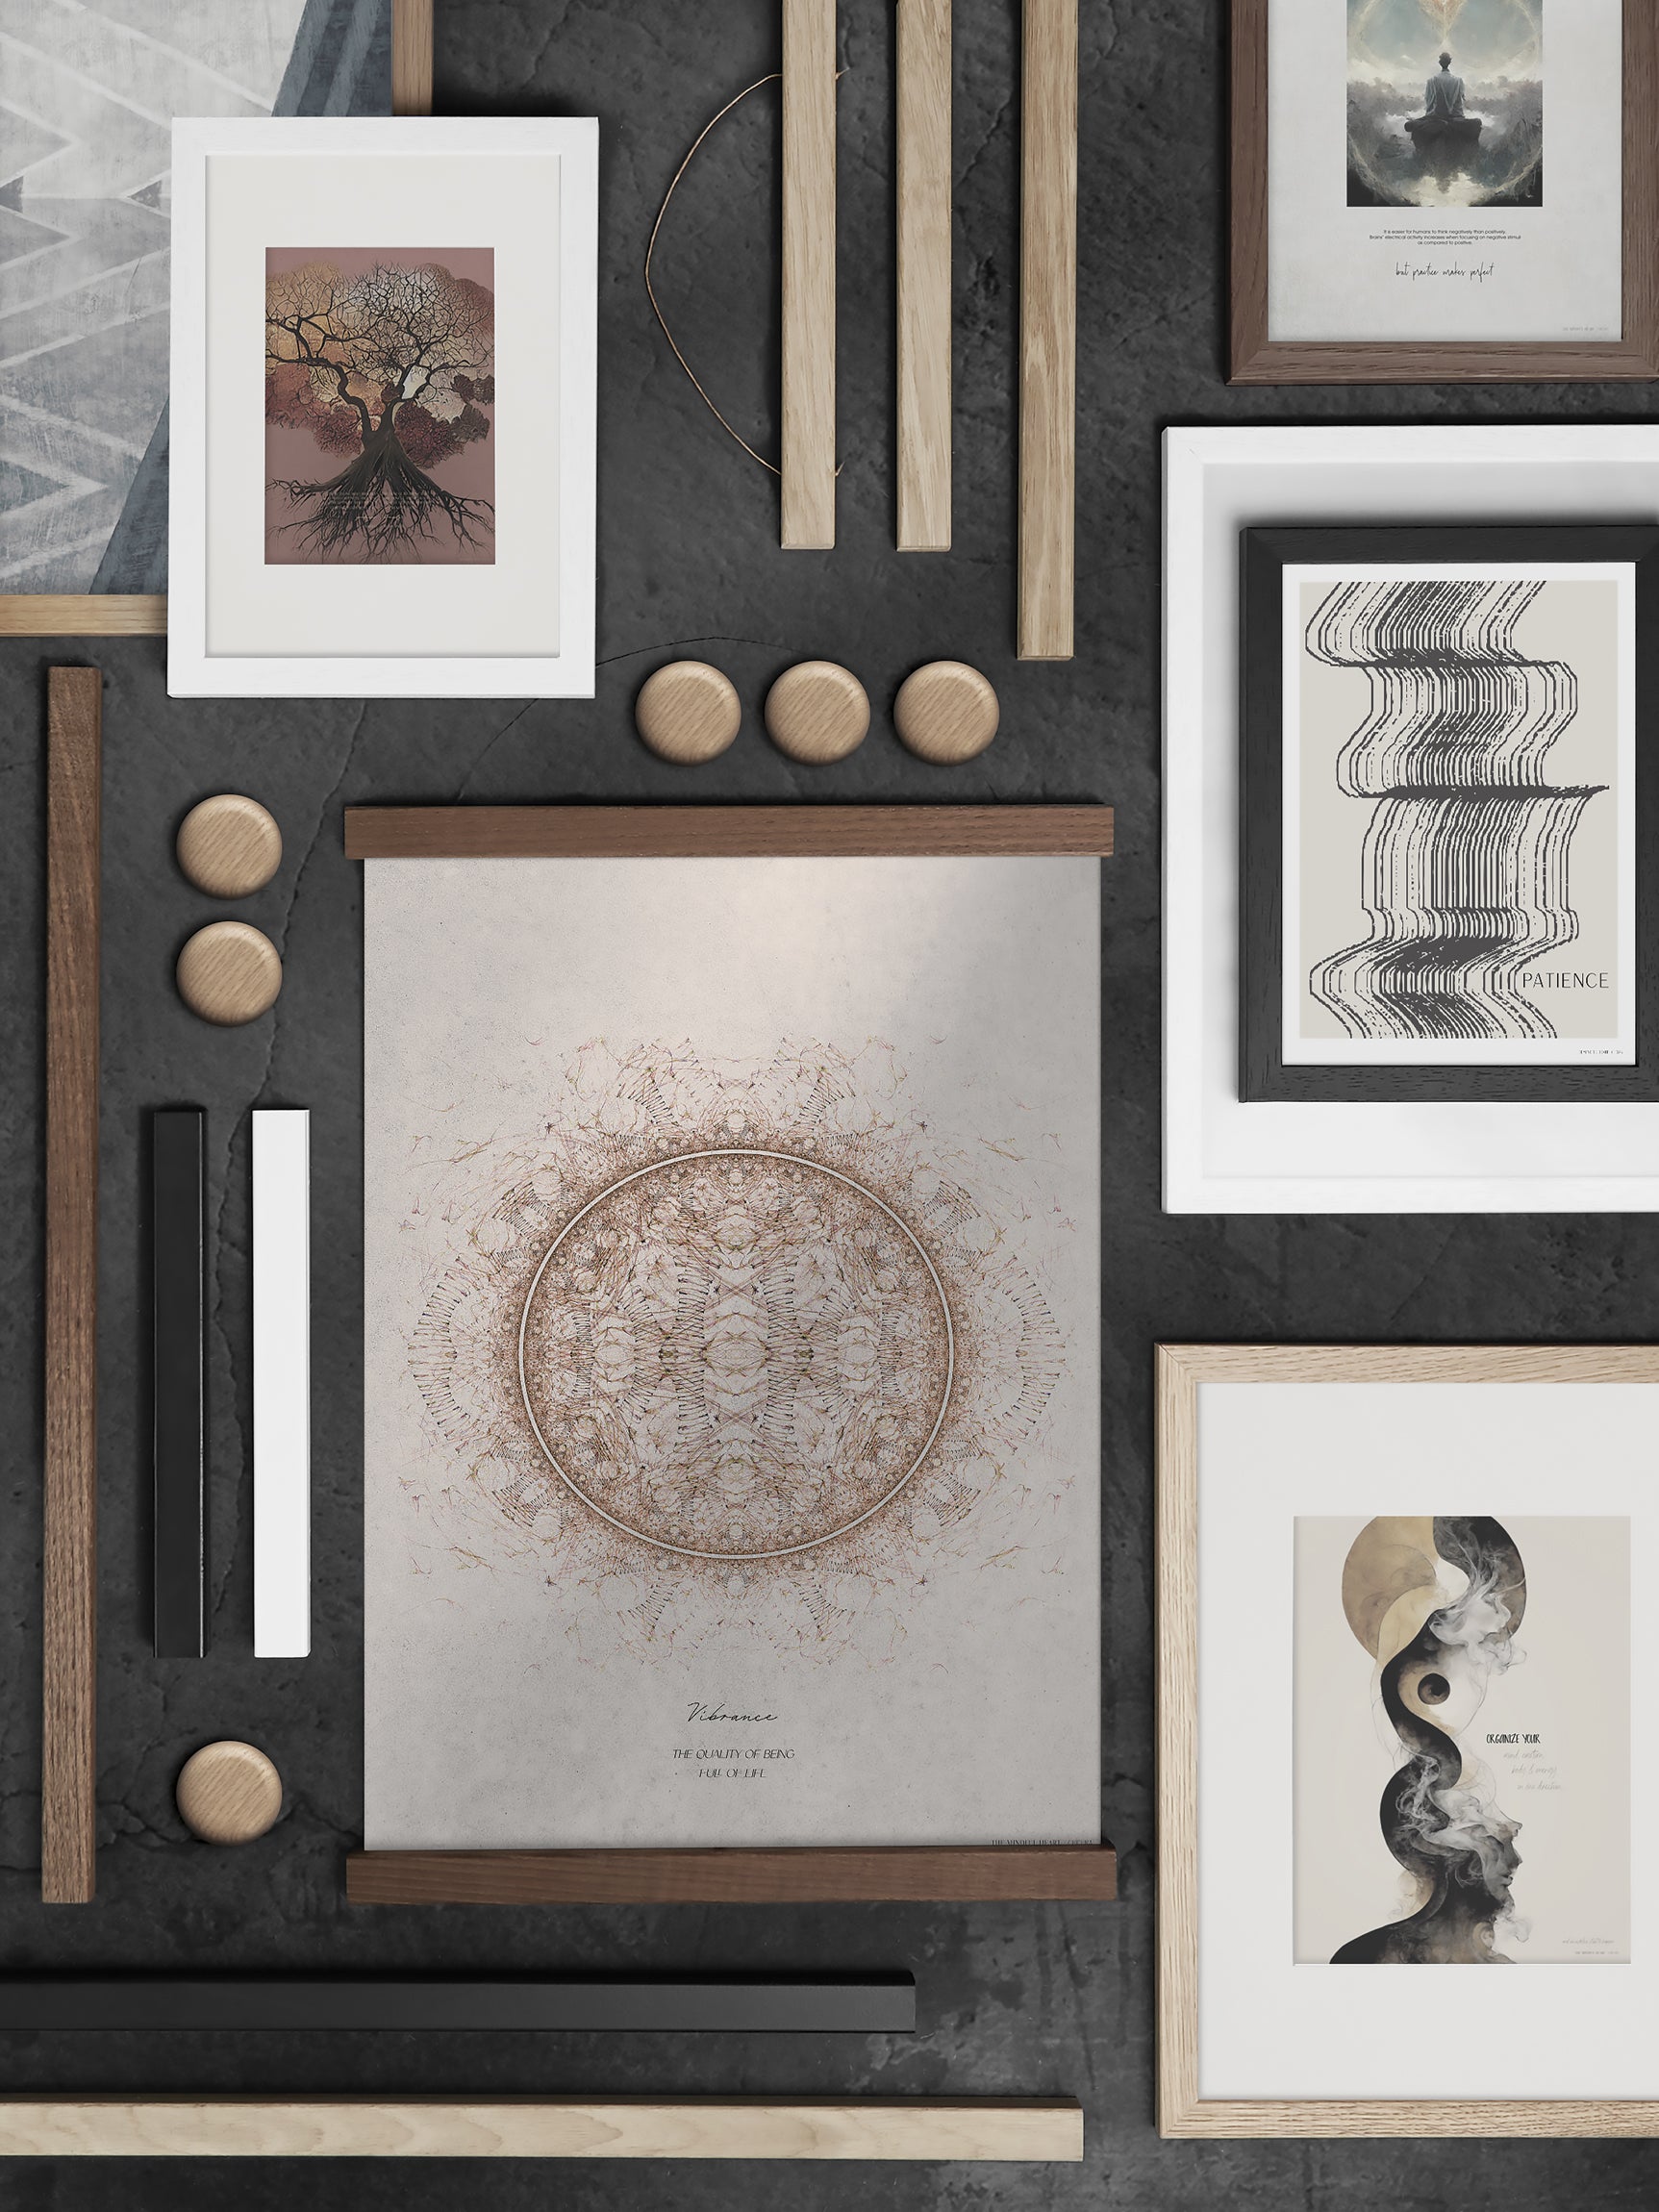 ChiCura Living, Art & Frames Træramme - A2 - Brun Egetræ - Akrylglas Frames / Wood Brown